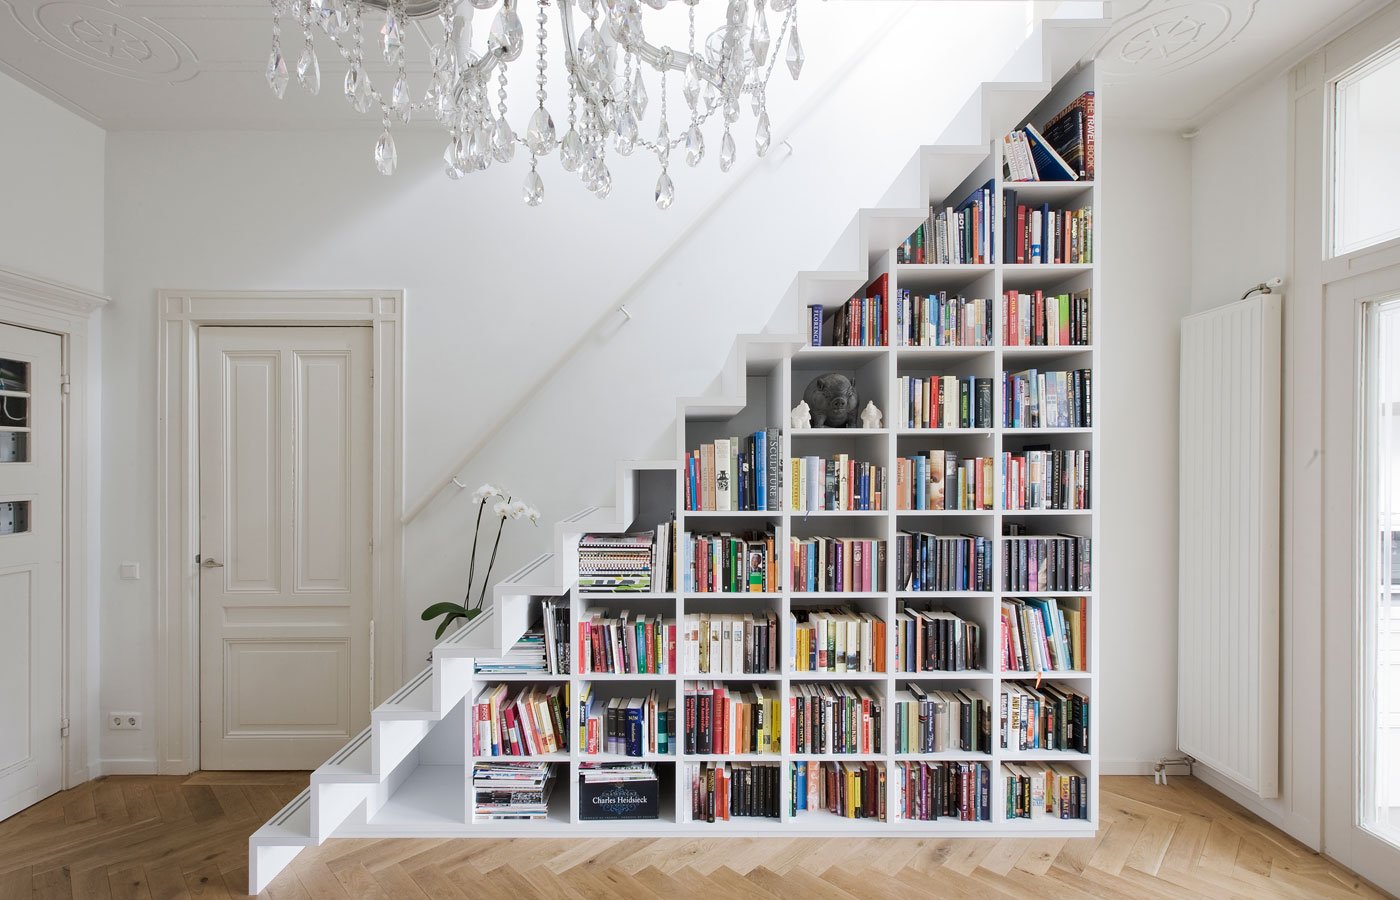 Стеллаж этаж. Шкаф под лестницей. Книжный стеллаж под лестницей. Книжный шкаф под лестницей. Необычные книжные стеллажи.